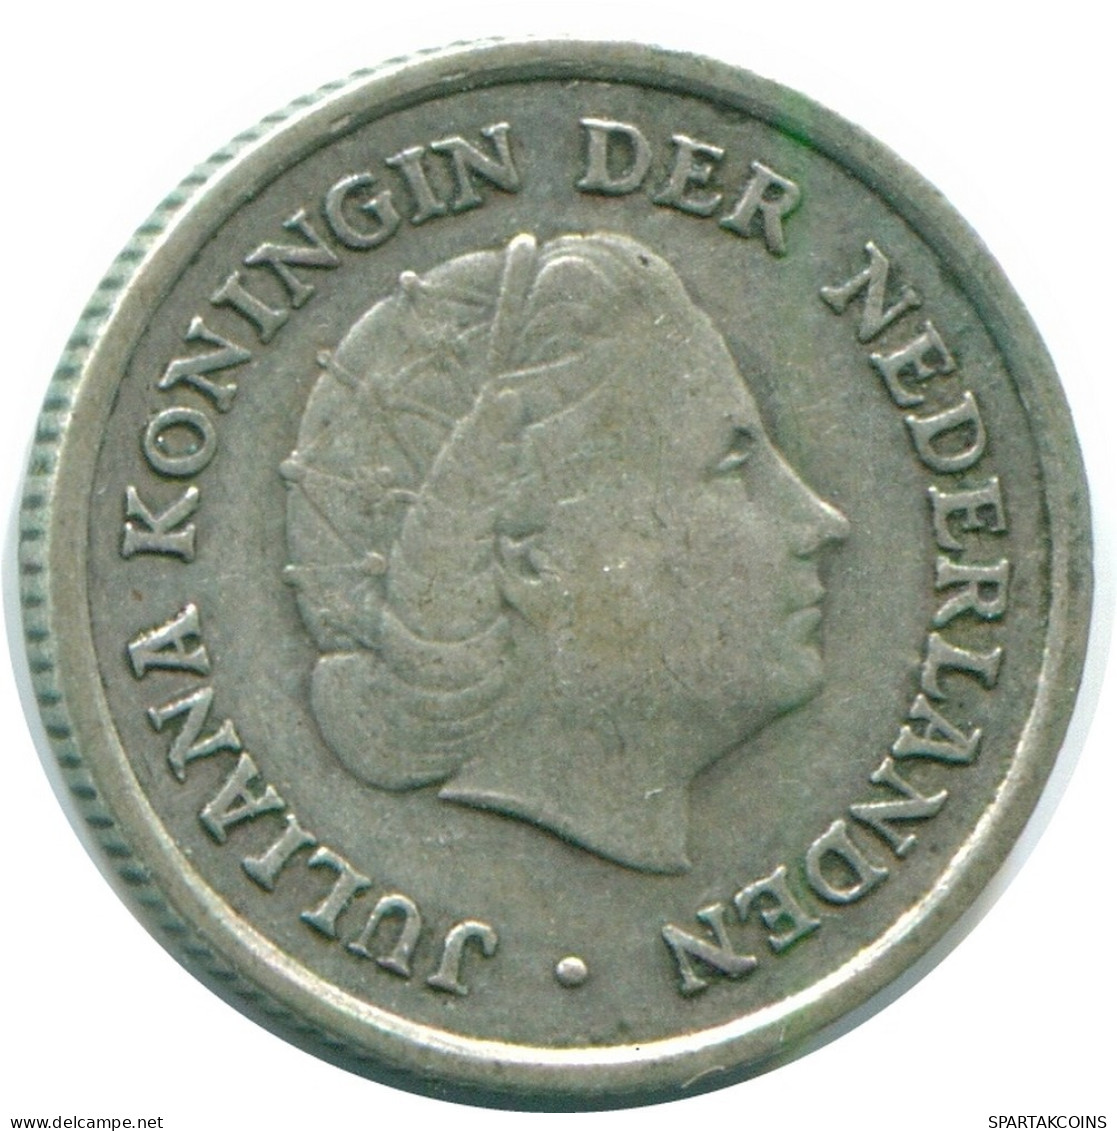 1/10 GULDEN 1960 NIEDERLÄNDISCHE ANTILLEN SILBER Koloniale Münze #NL12331.3.D.A - Nederlandse Antillen